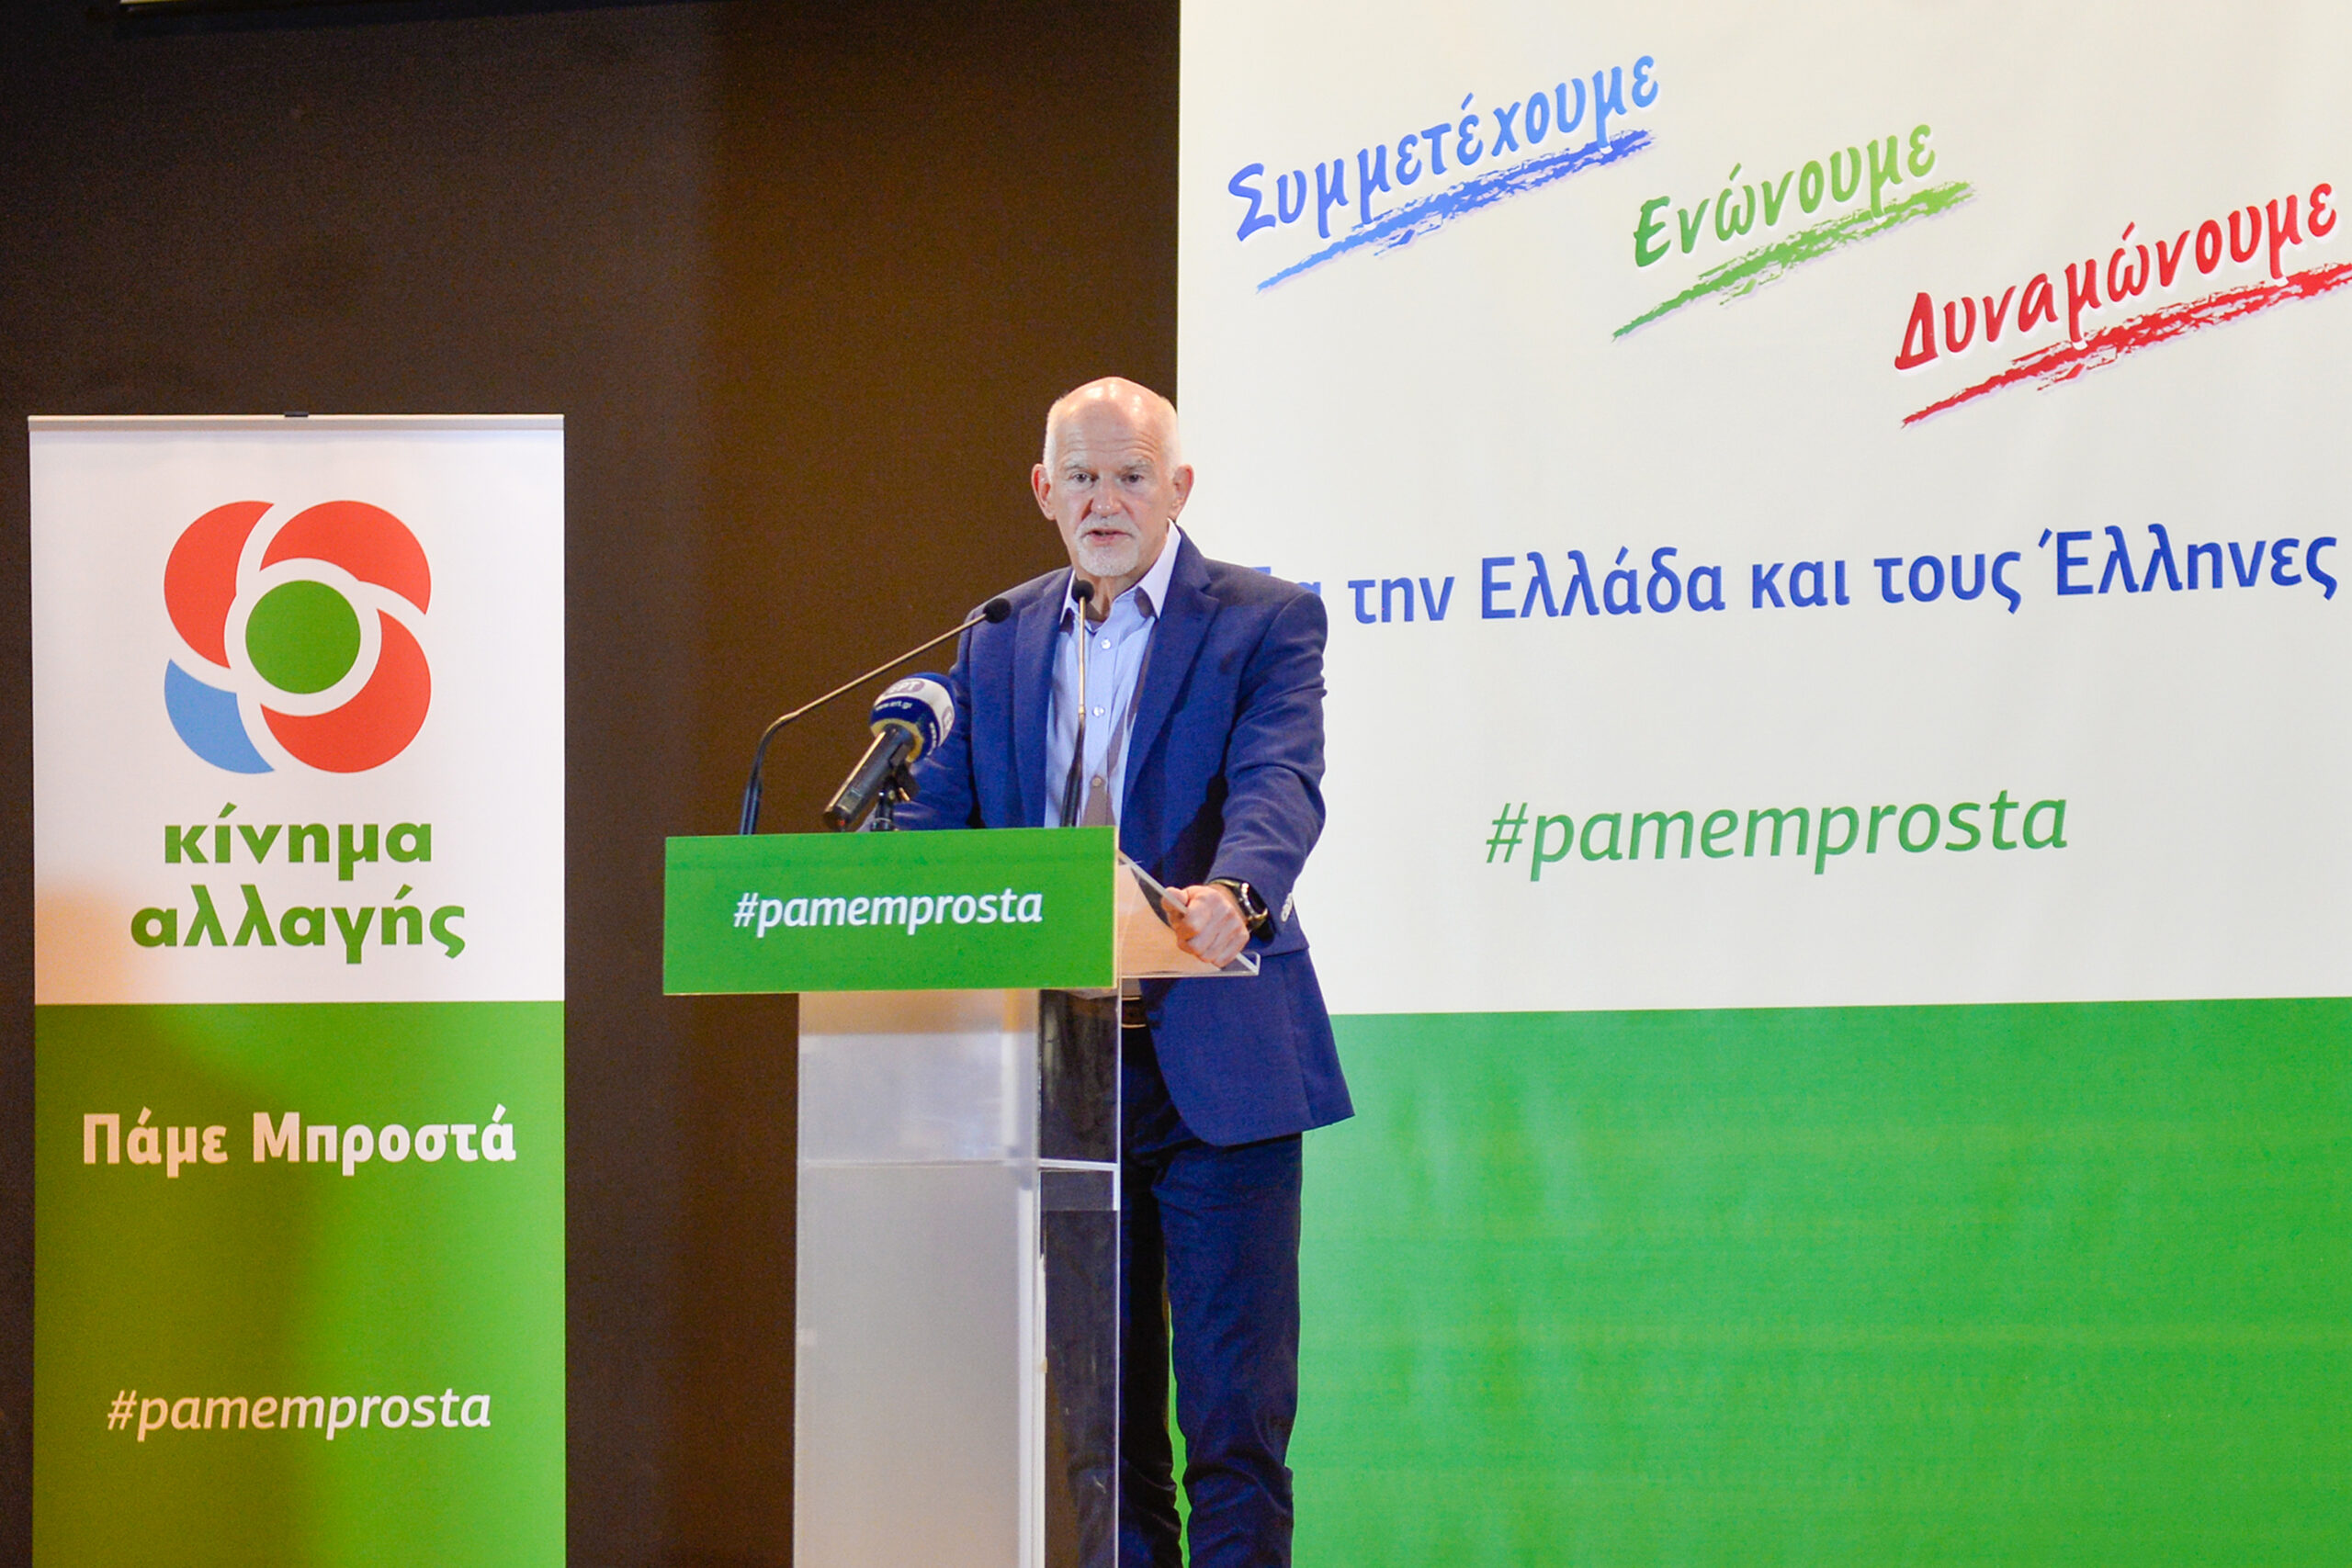 Γ. Παπανδρέου: Δεν θα αναστηθεί το ΠΑΣΟΚ με τις ψήφους της Νέας Δημοκρατίας - Ο ΣΥΡΙΖΑ δεν έχει αξιοπιστία και δεν εμπνέει